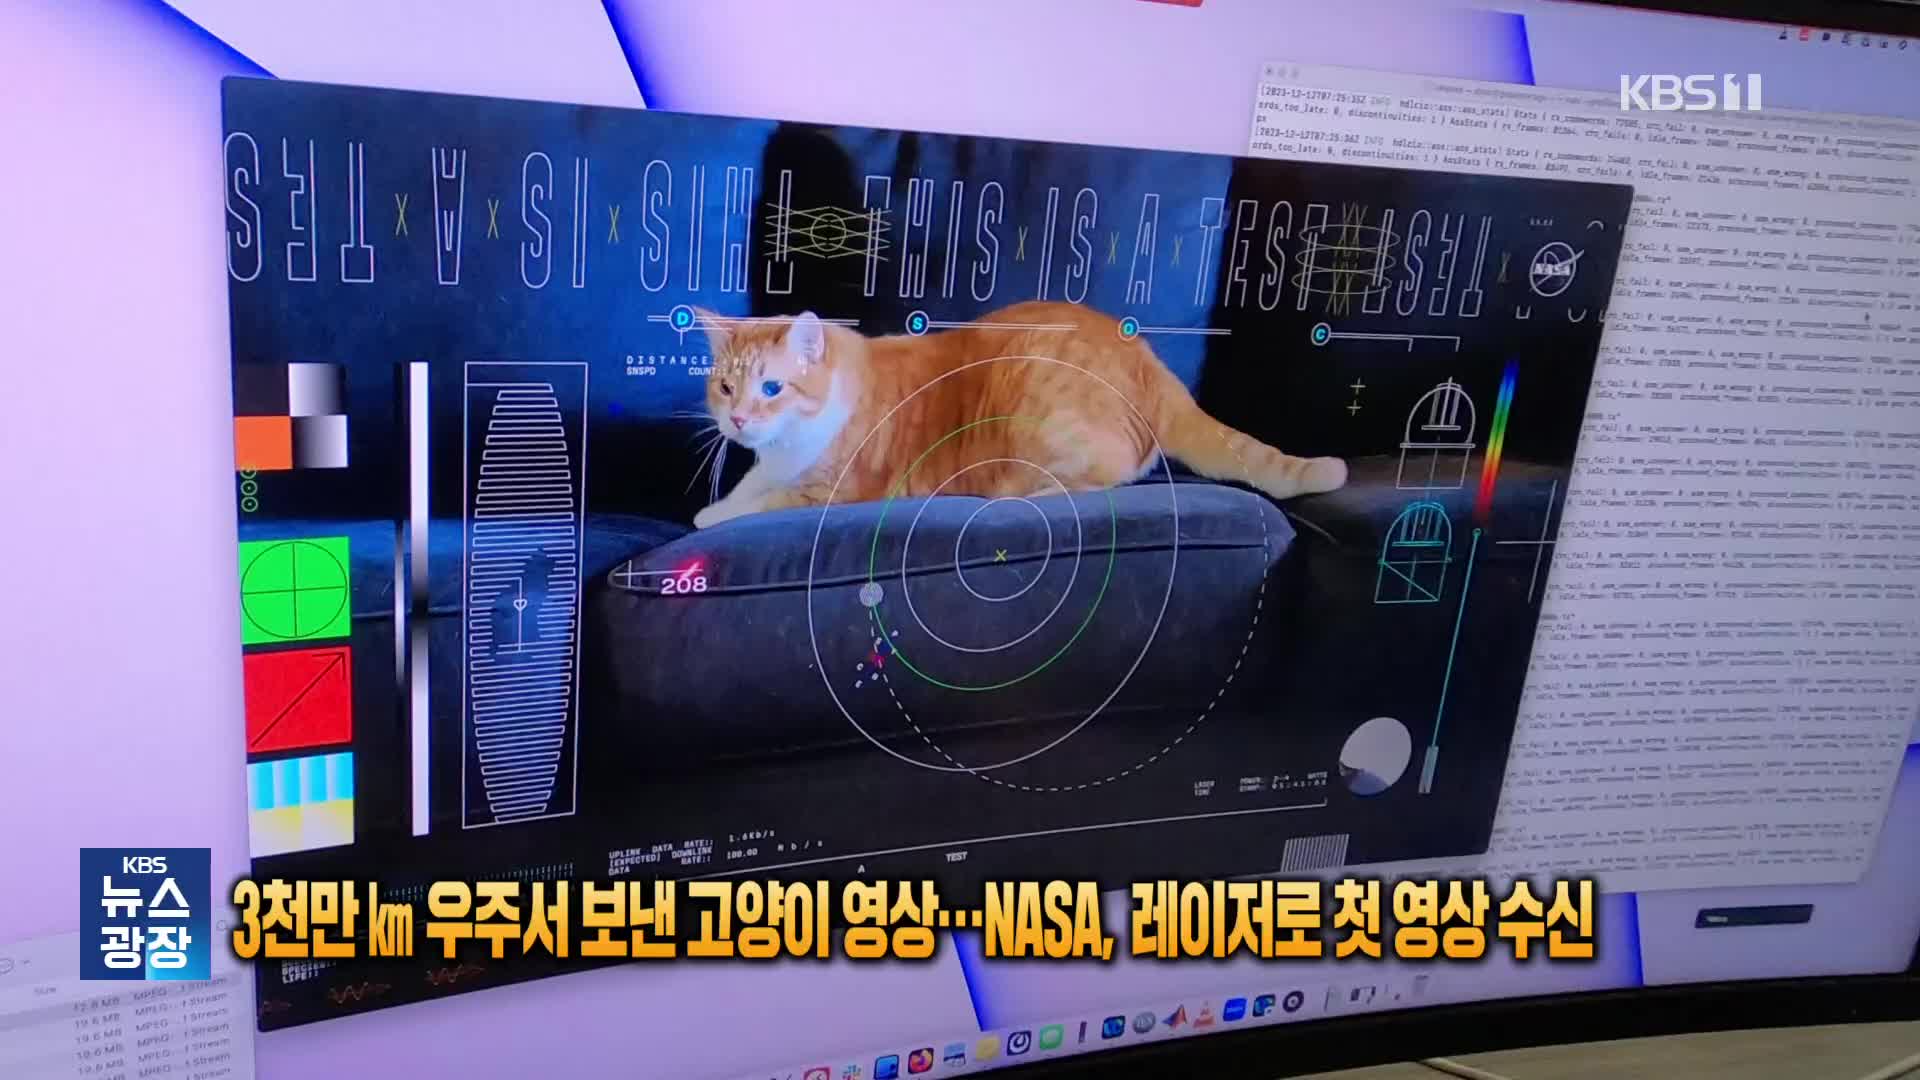 3천만㎞ 우주서 보낸 고양이 영상…NASA, 레이저로 첫 영상 수신 [잇슈 SNS] 